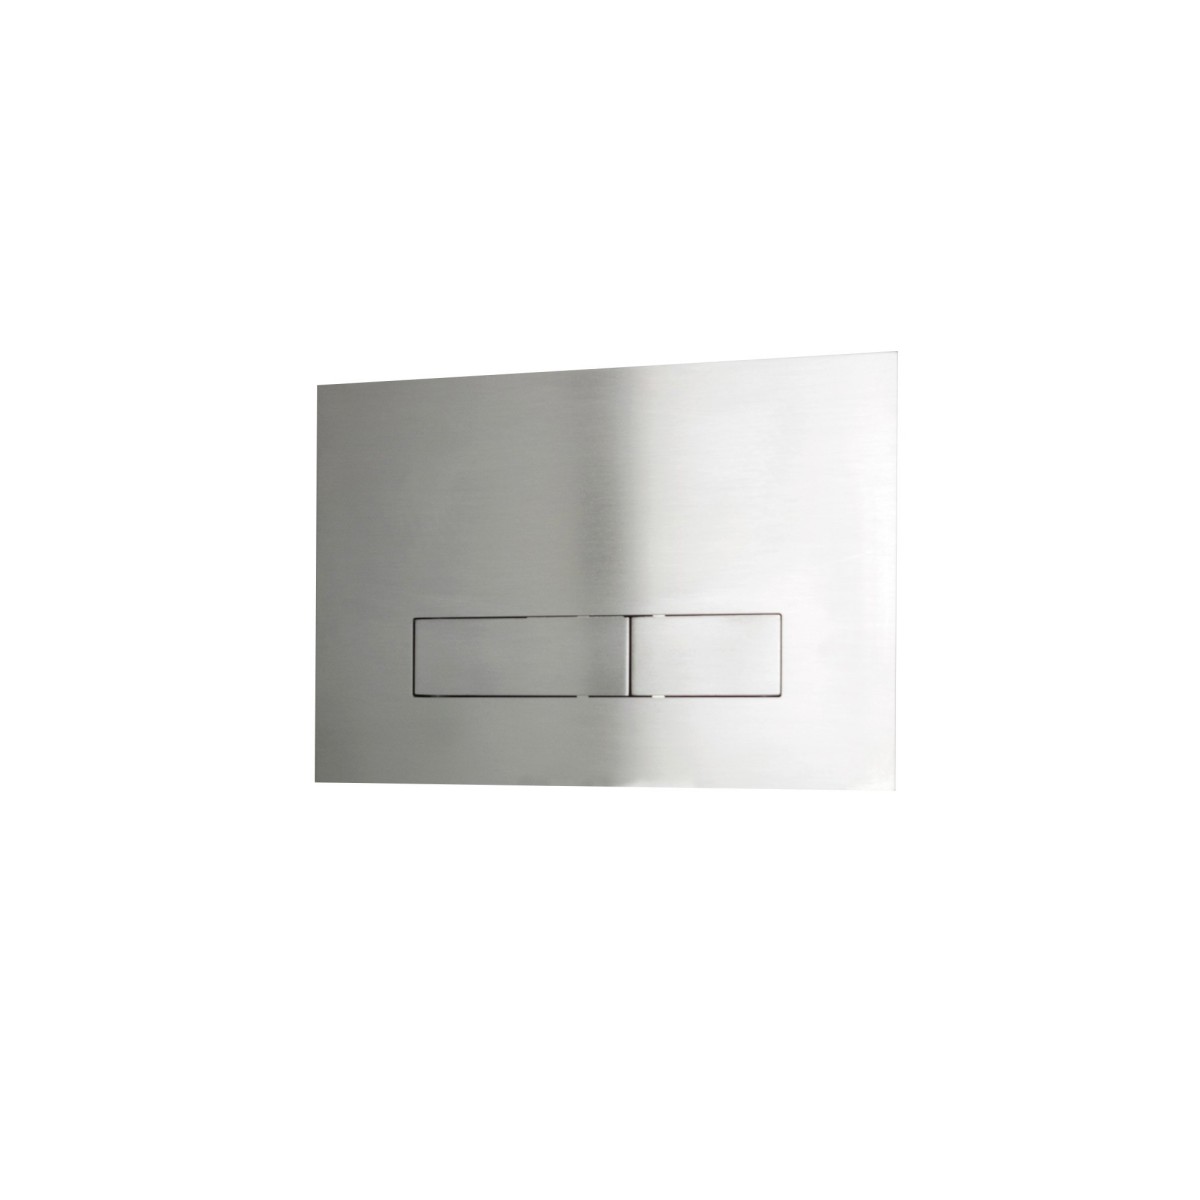 Placca WC in acciaio inox 316L compatibile con SIGMA-8  di Tubico Tevere